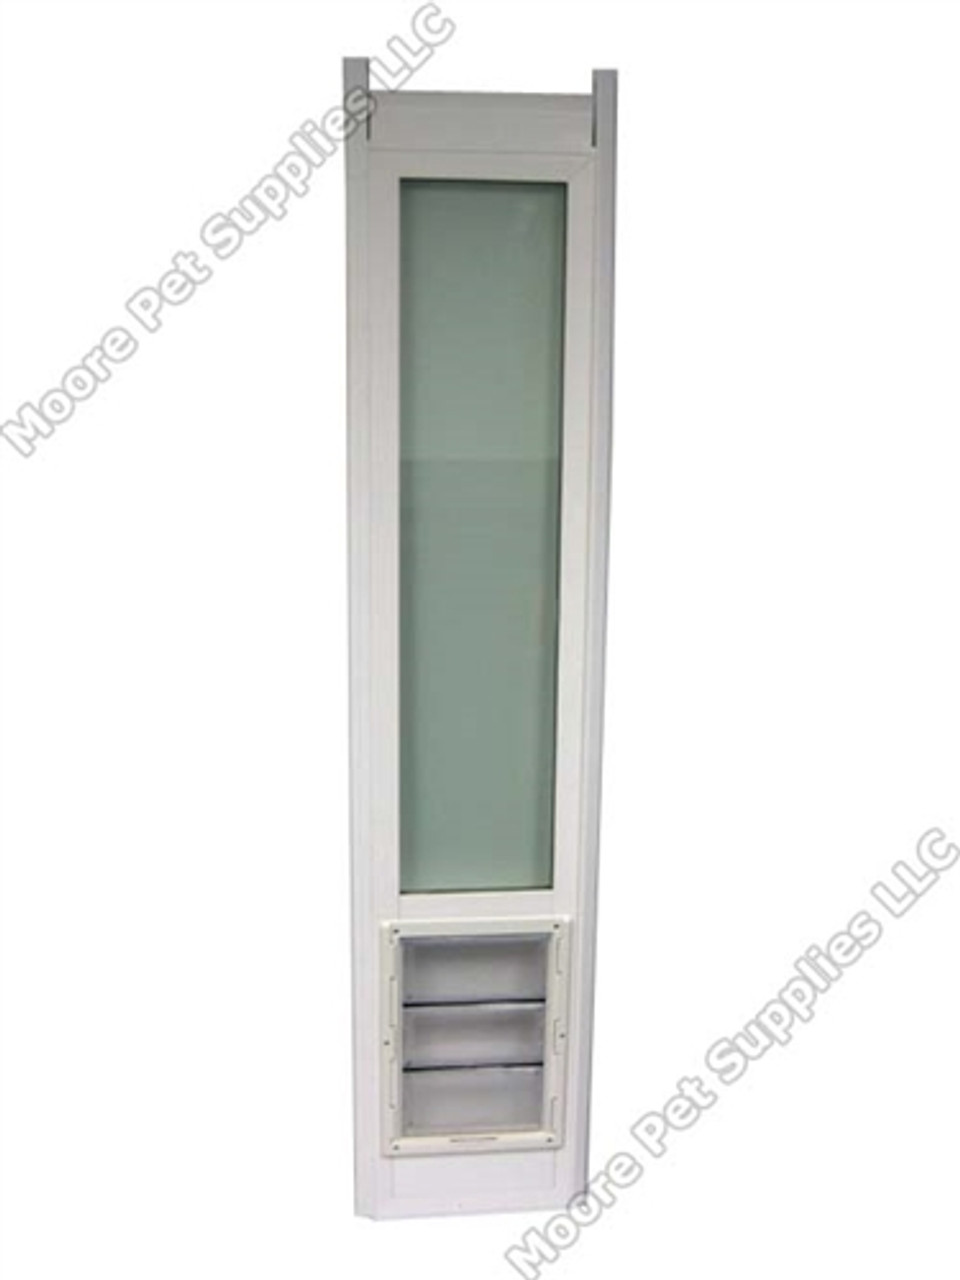 vinyl pet door for sliding glass door